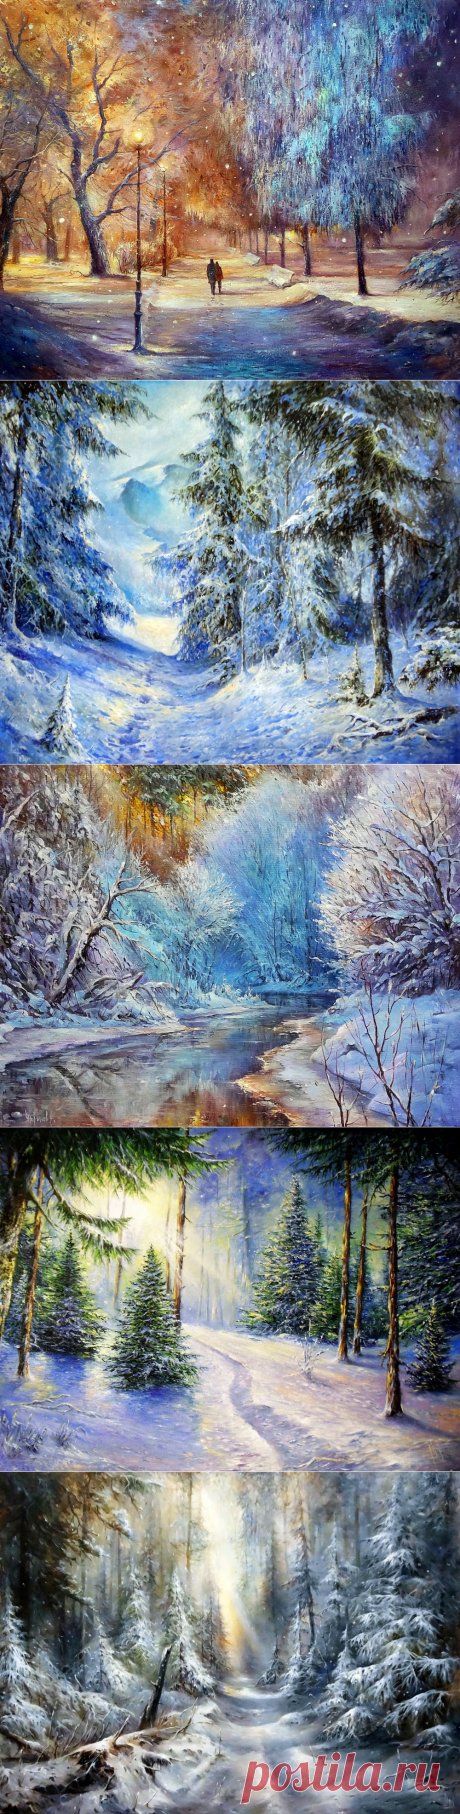 Пленяет красотою зимний лес… Художник Алексей Чупринов.